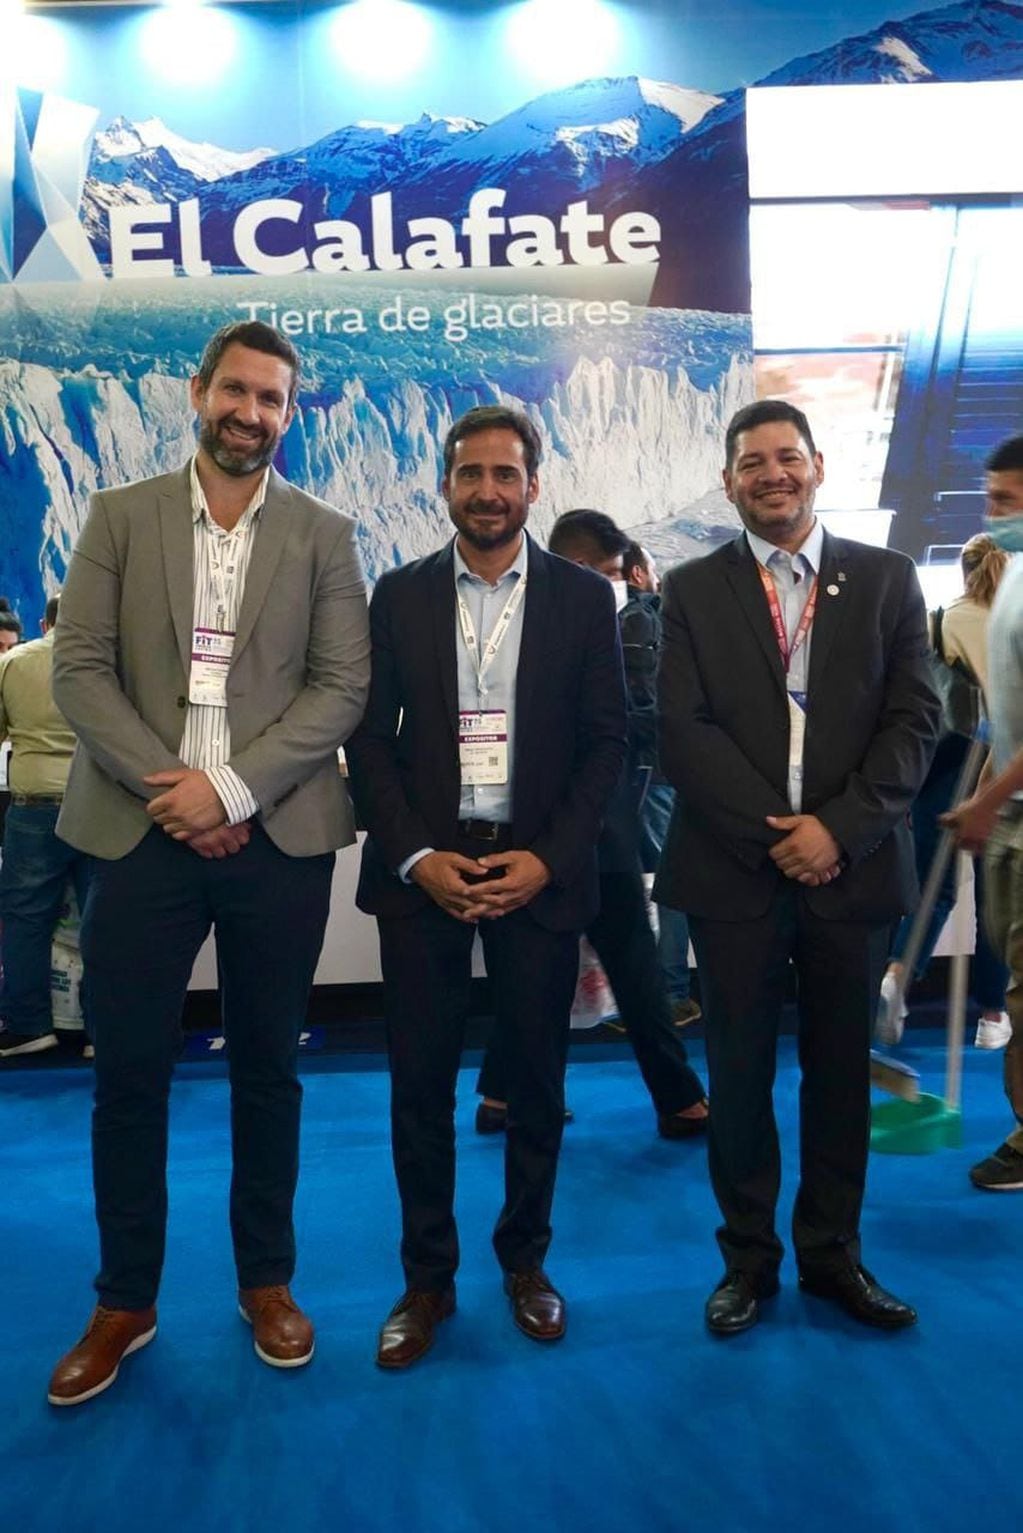 David Ferreyra se reunió con los secretarios de turismo del Calafate y de Puerto Madryn.